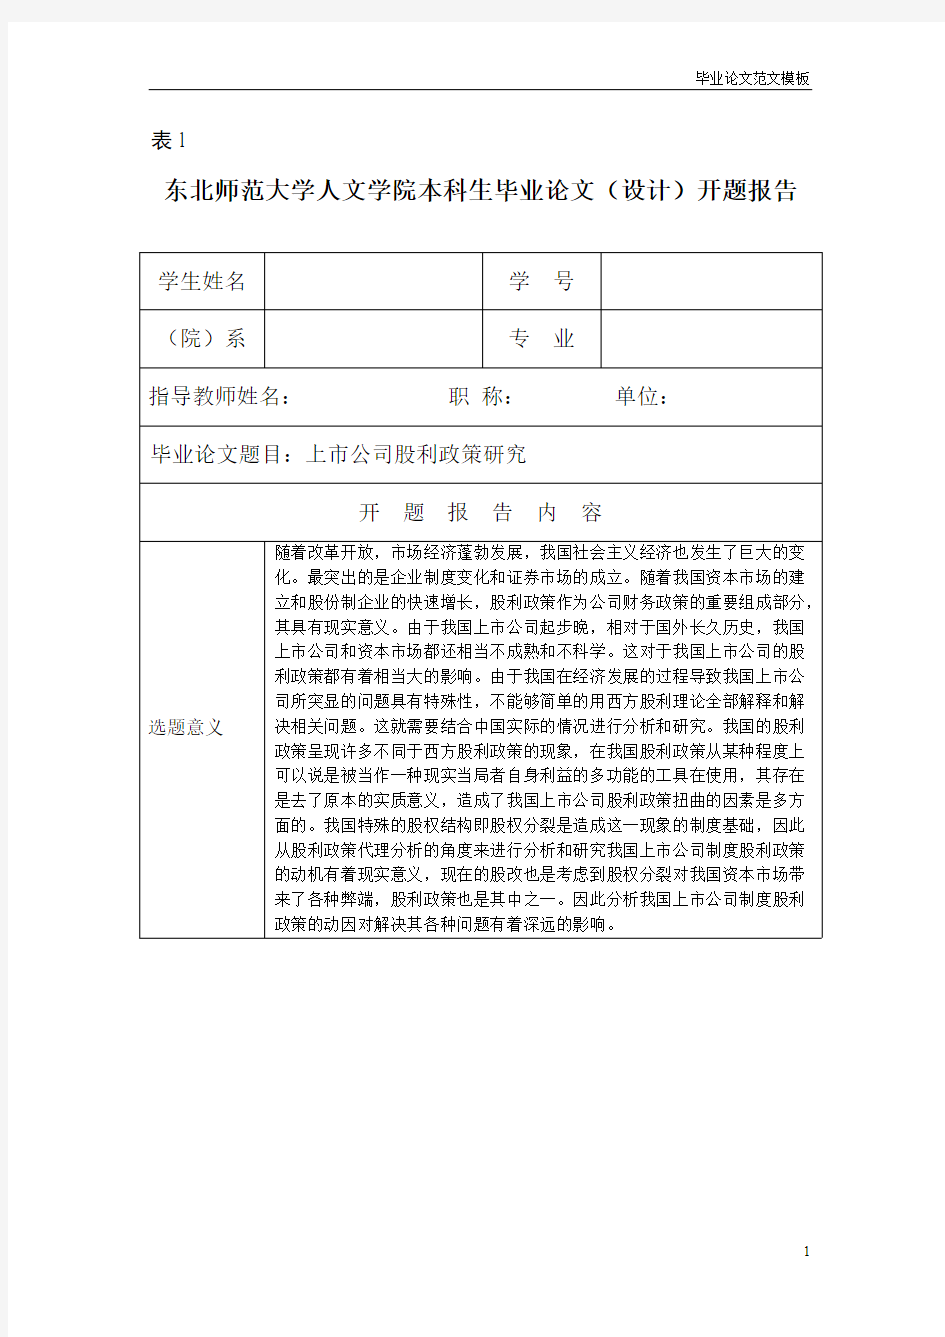 开题报告-上市公司股利政策研究.pdf